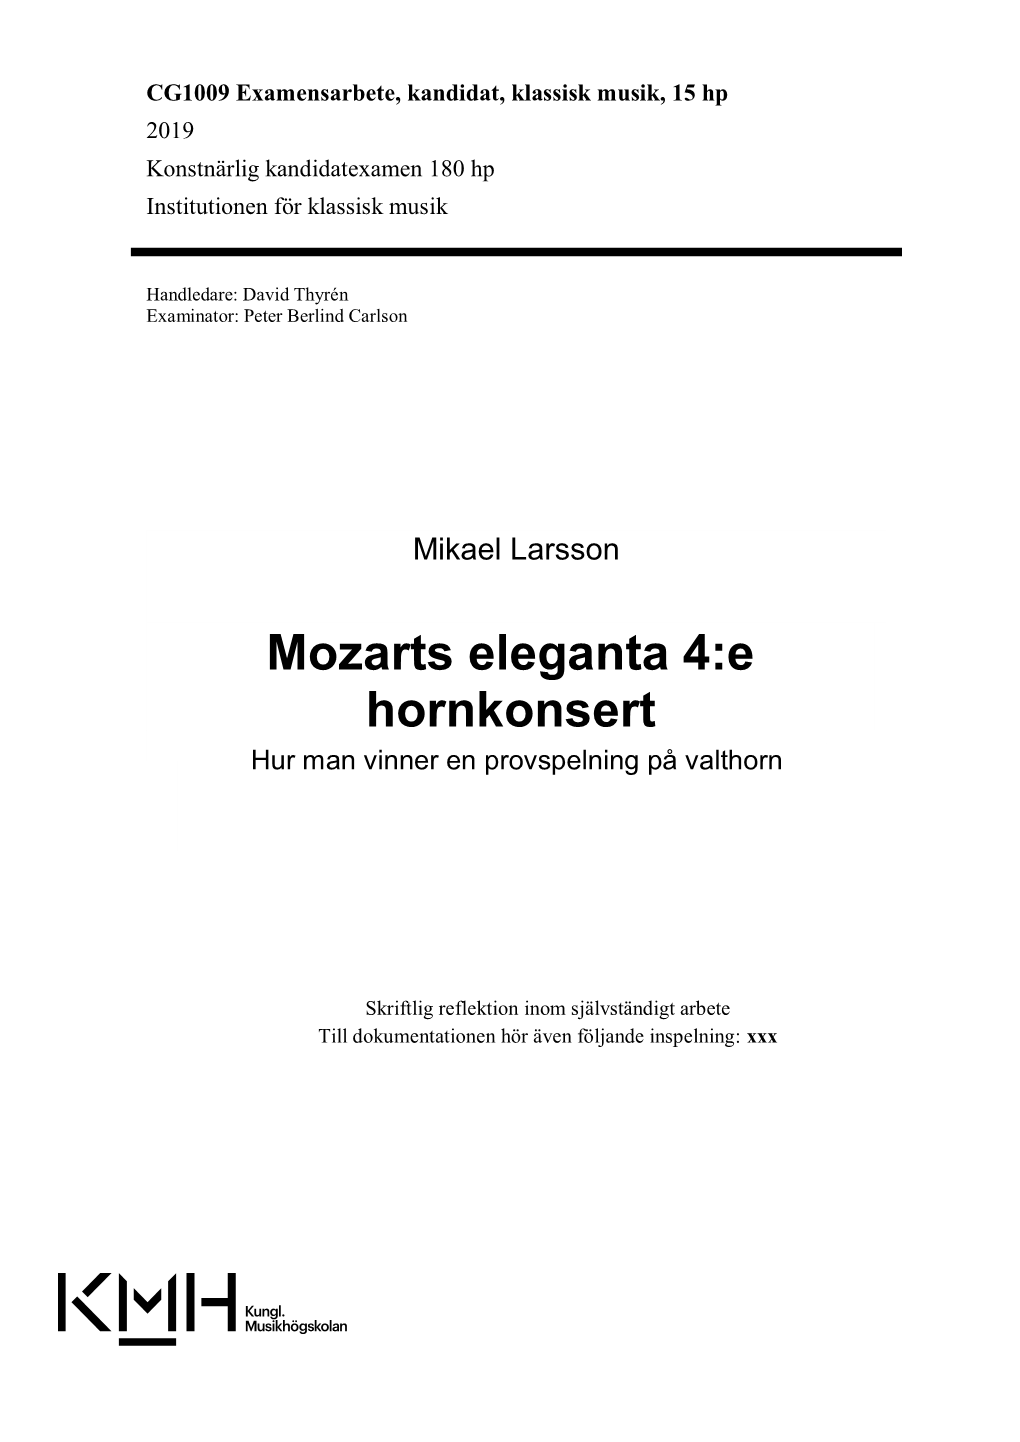 Mozarts Eleganta 4:E Hornkonsert Hur Man Vinner En Provspelning På Valthorn